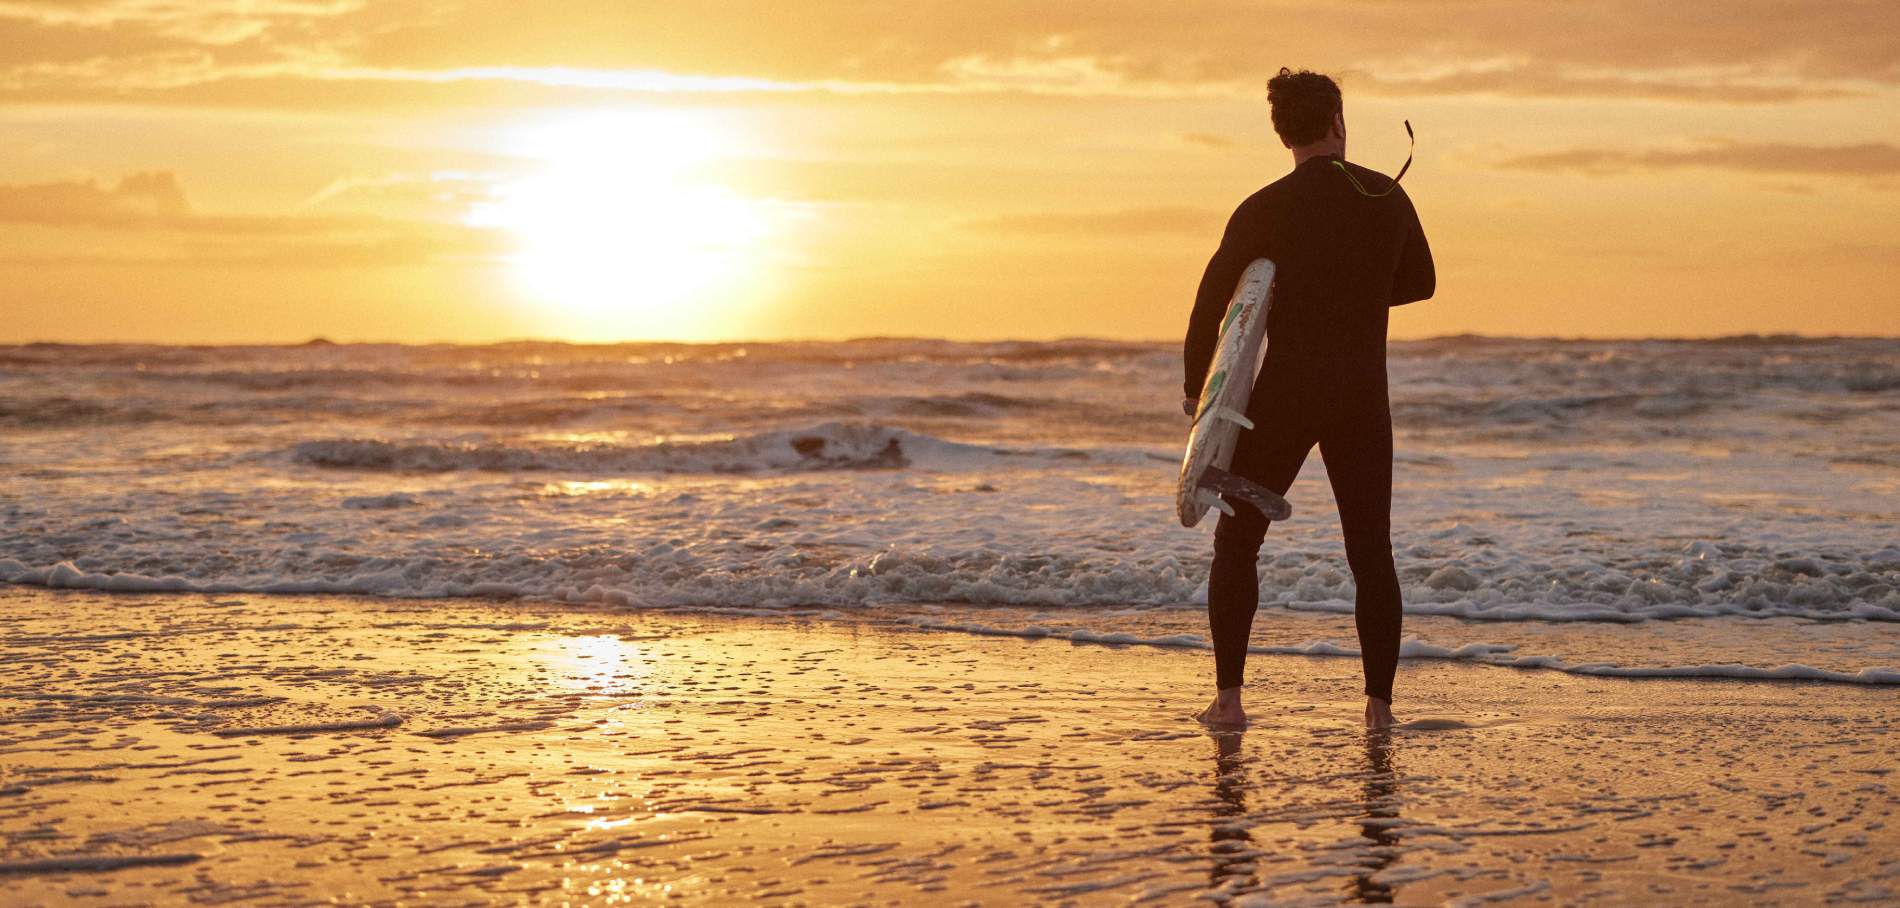 Một vận động viên lướt sóng mặc bộ đồ lặn đang phân tích, đánh giá các con sóng vào khoảnh khắc mặt trời mọc